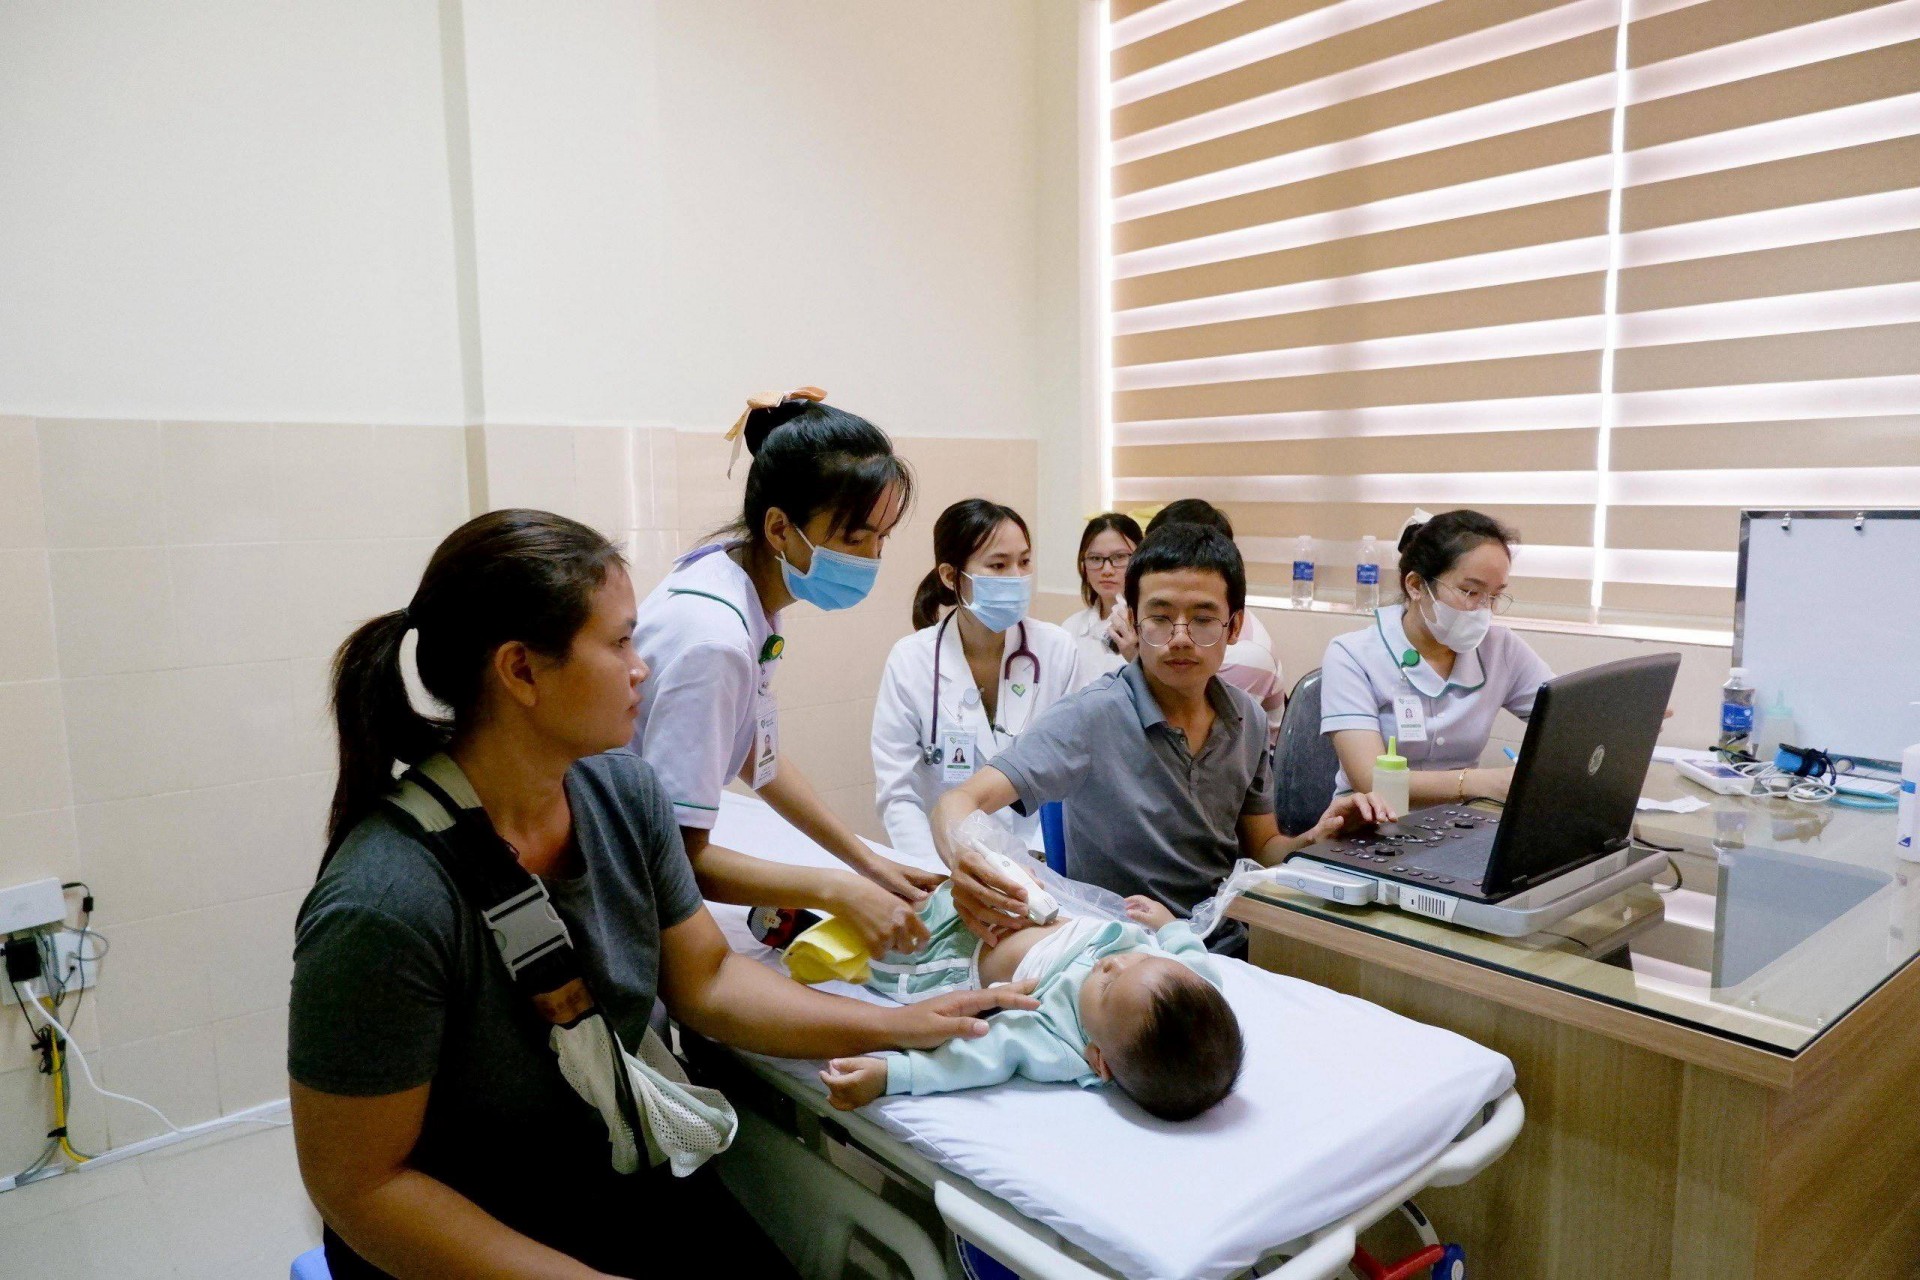 Sau khi được khám sàng lọc, nếu phát hiện bệnh các em sẽ được hỗ trợ điều trị tại Bệnh viện Đa khoa Khánh Hoà.